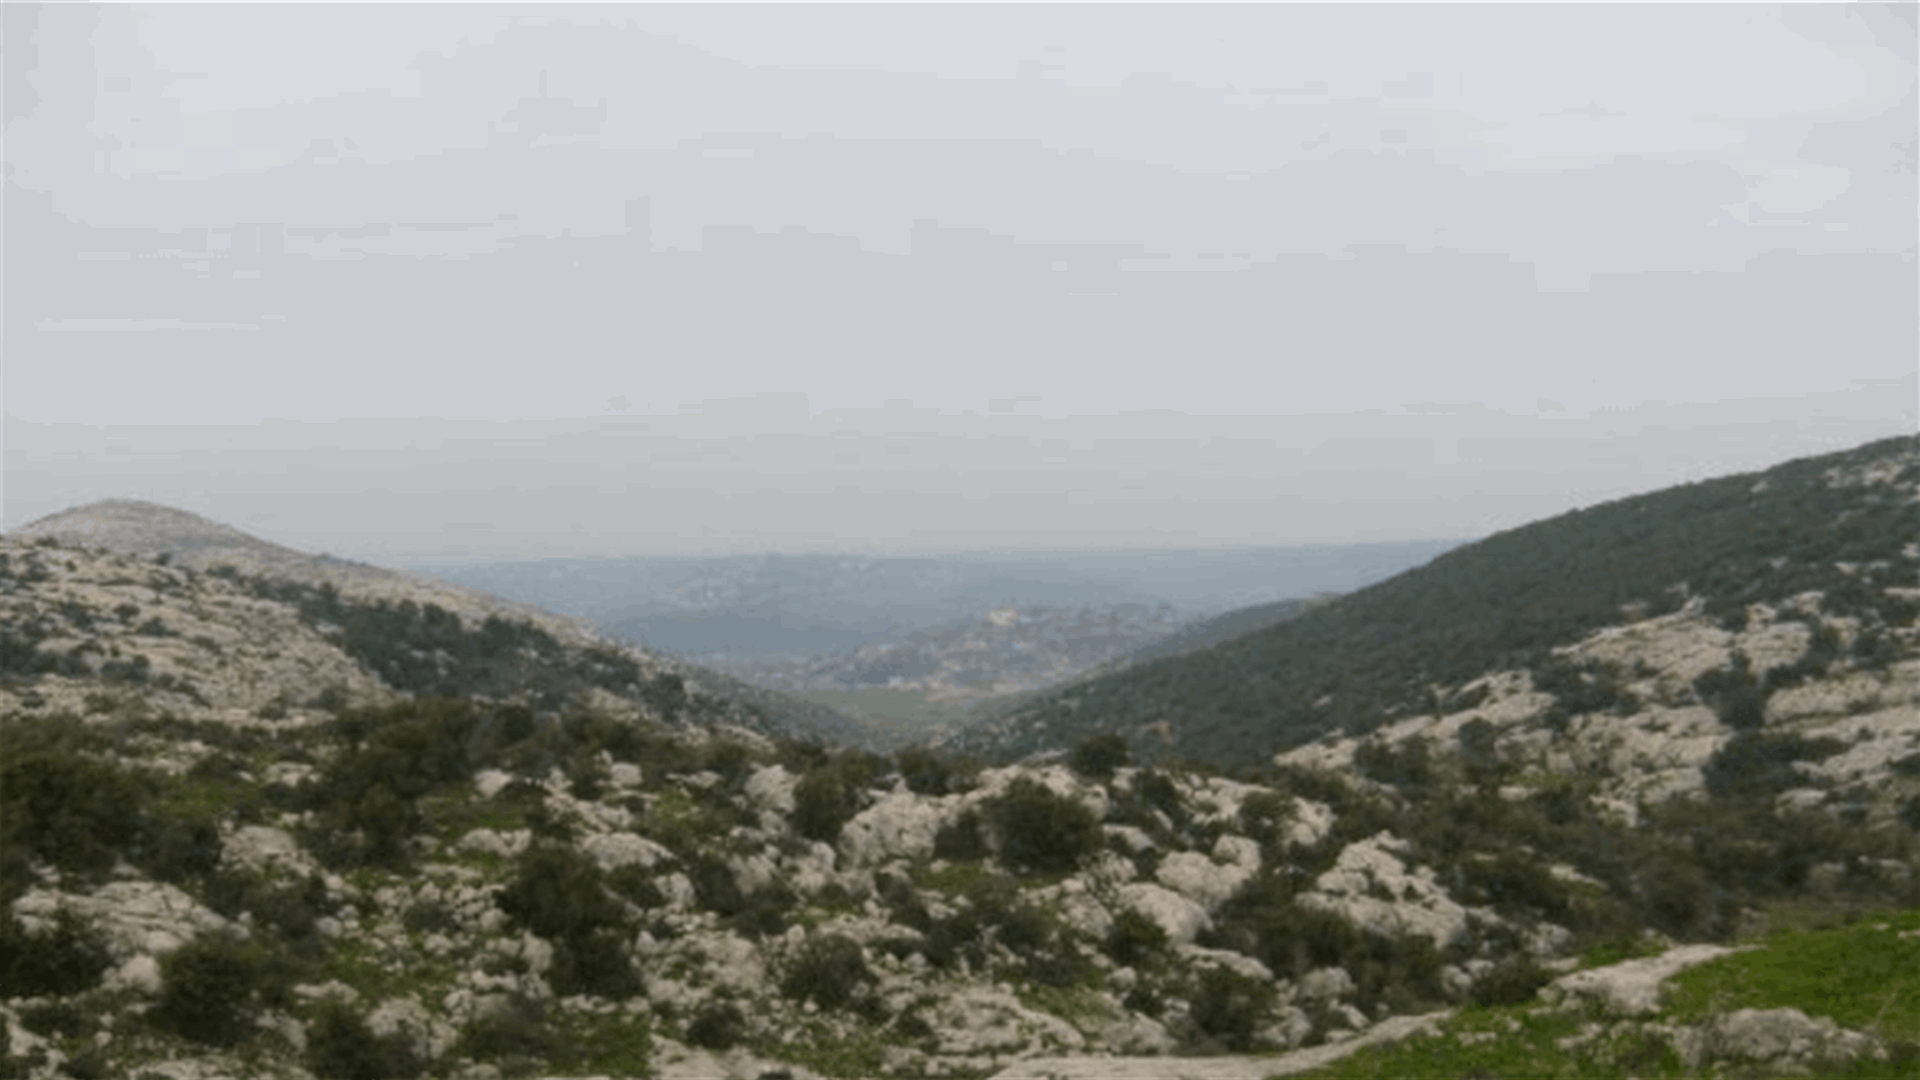 جريح بلغم أرضي عند الحدود اللبنانية السورية